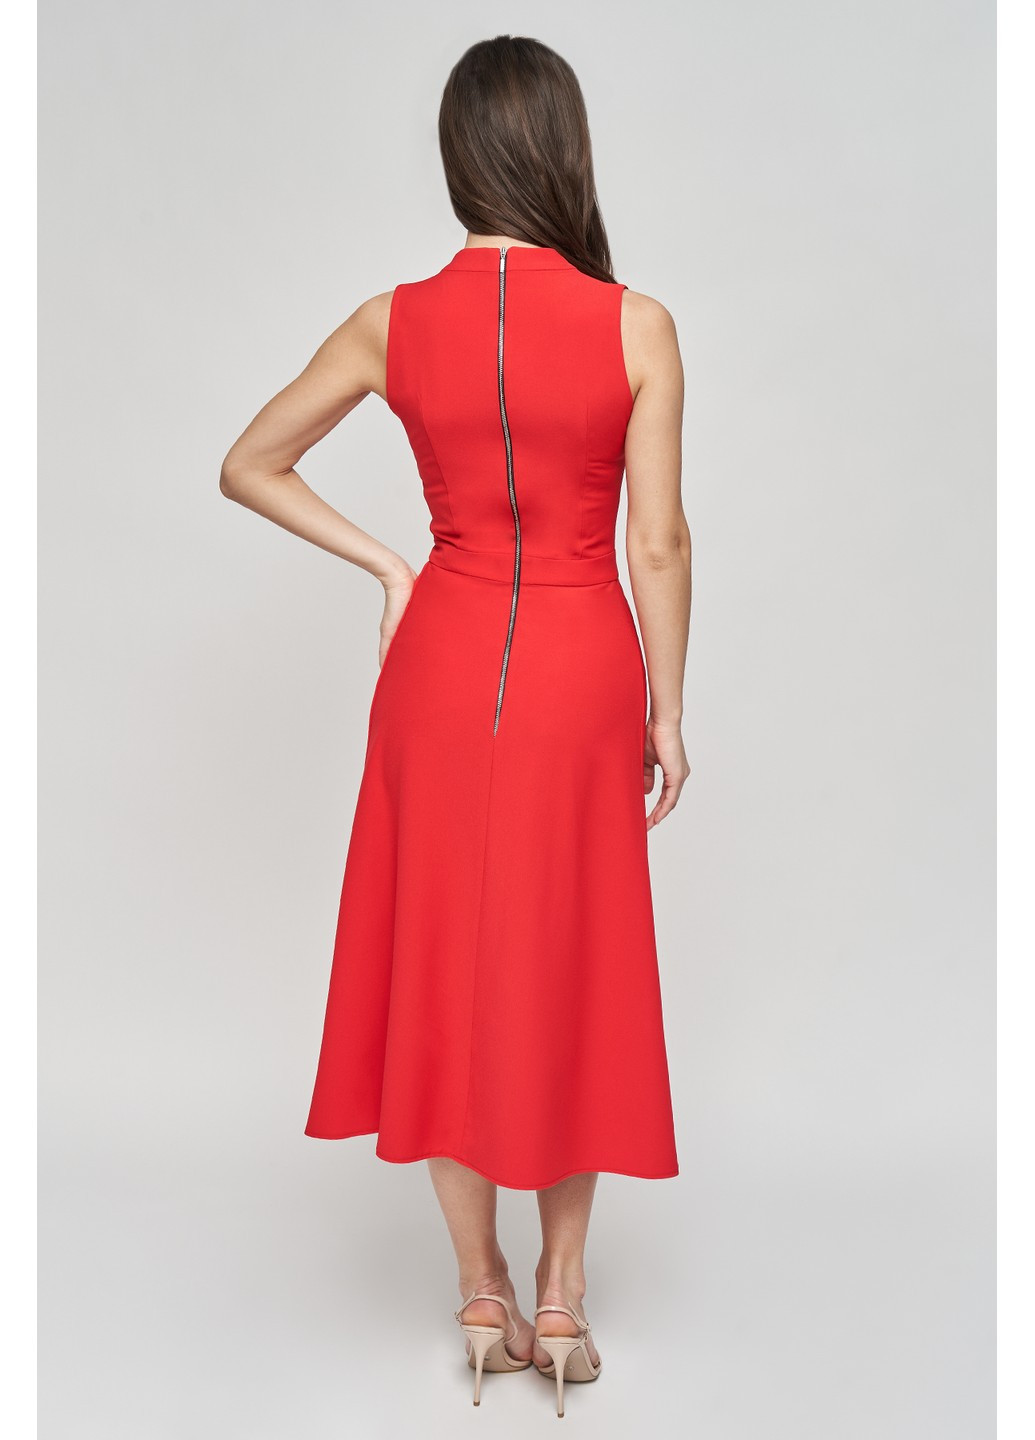 Красное коктейльное платье аврора со шлейфом, футляр BYURSE однотонное